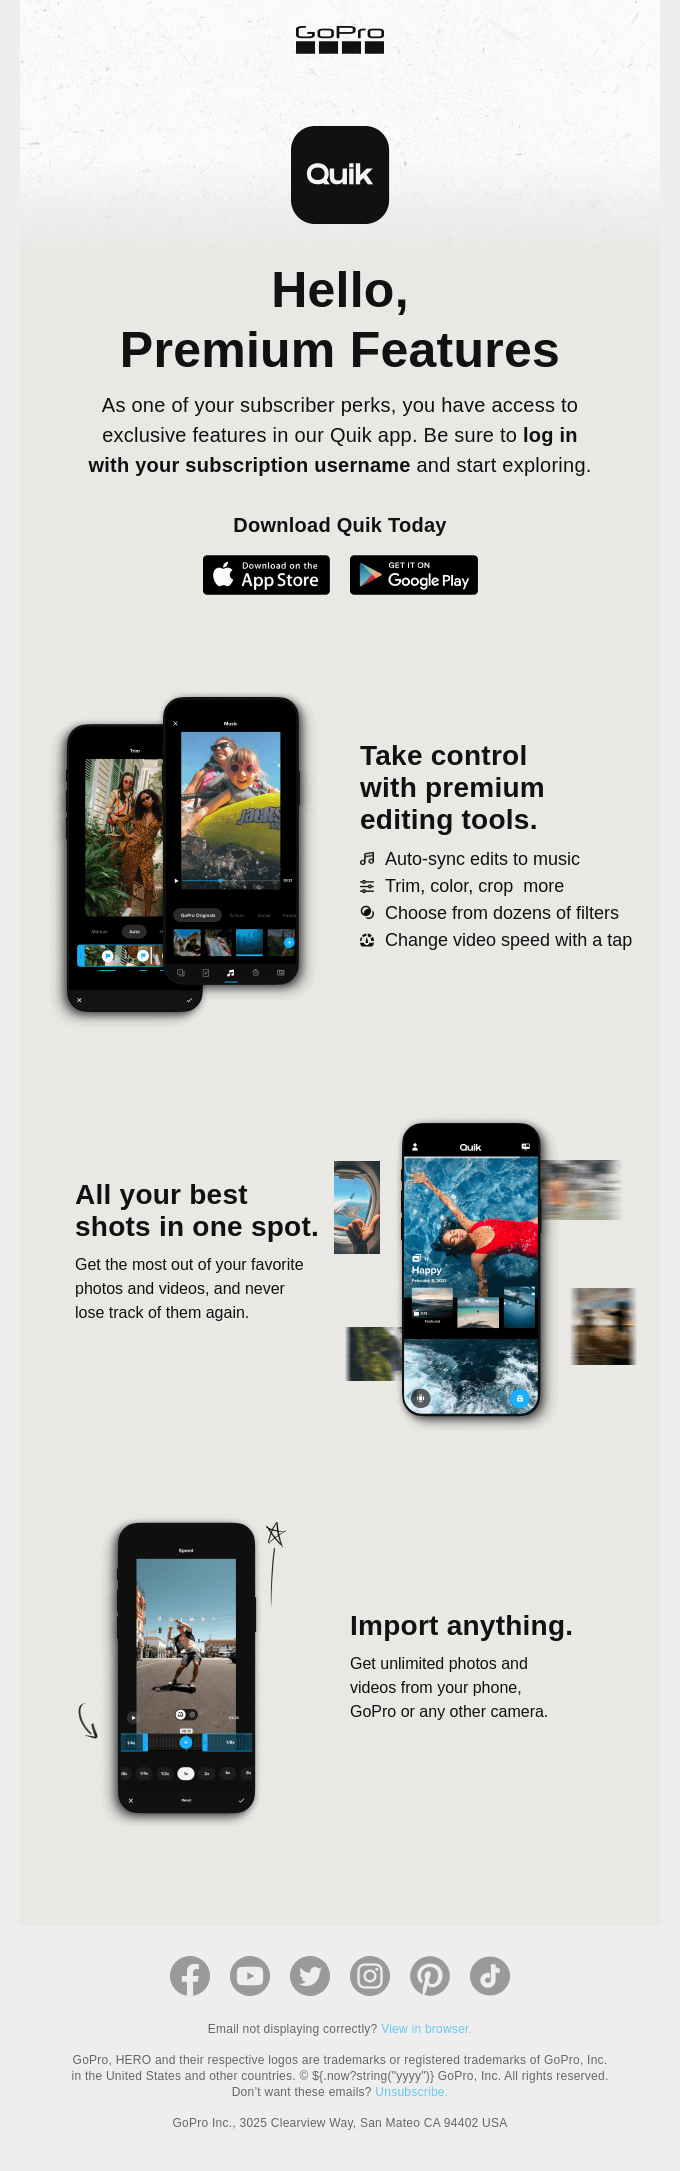 Explore all your Quik premium features ASAP.